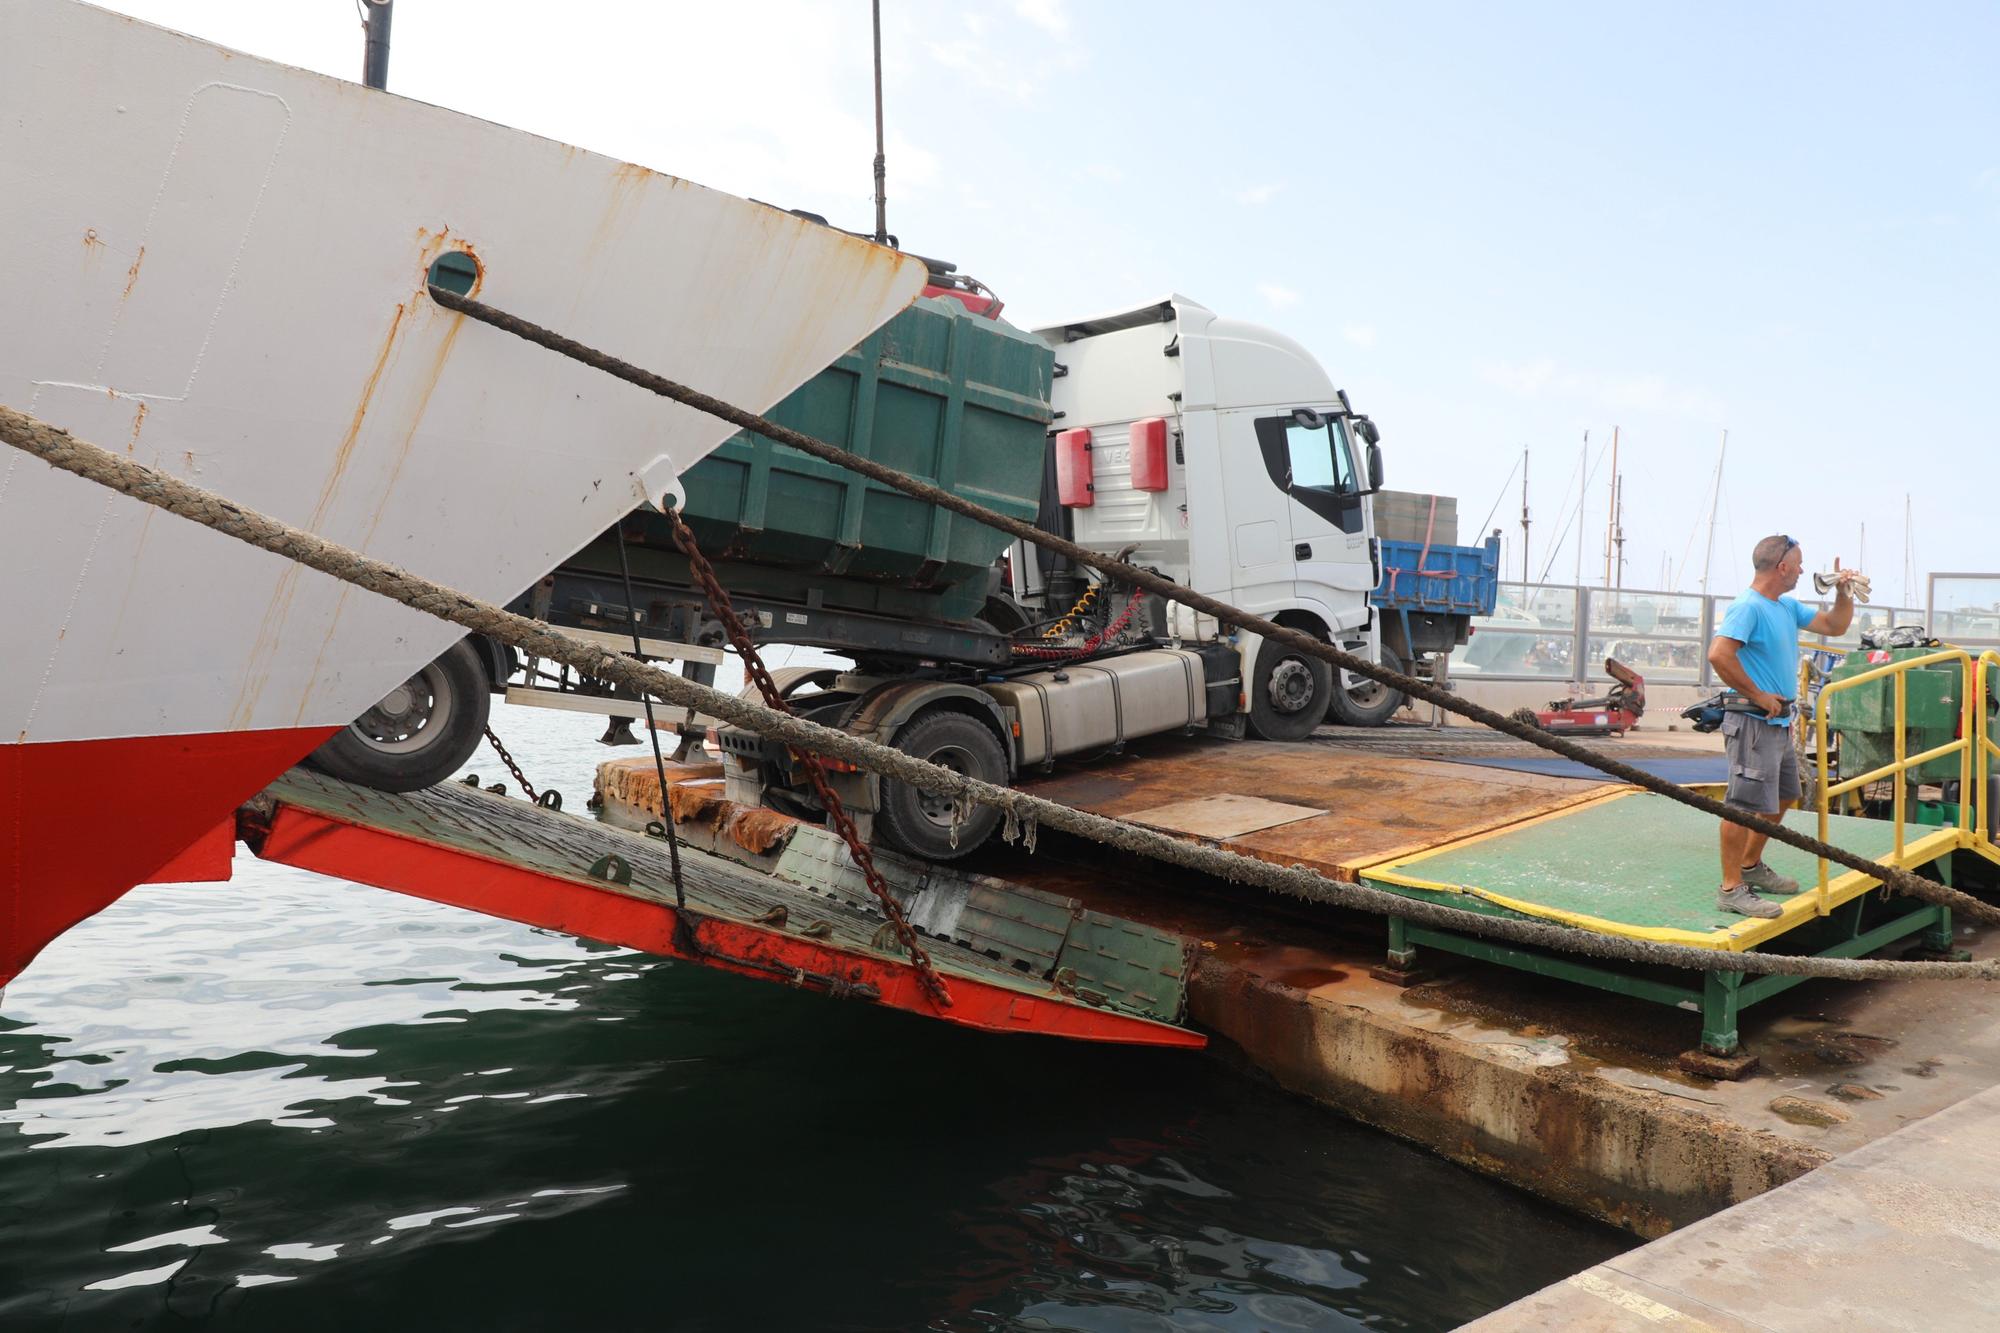 Cerrado el puerto de Formentera al tráfico rodado